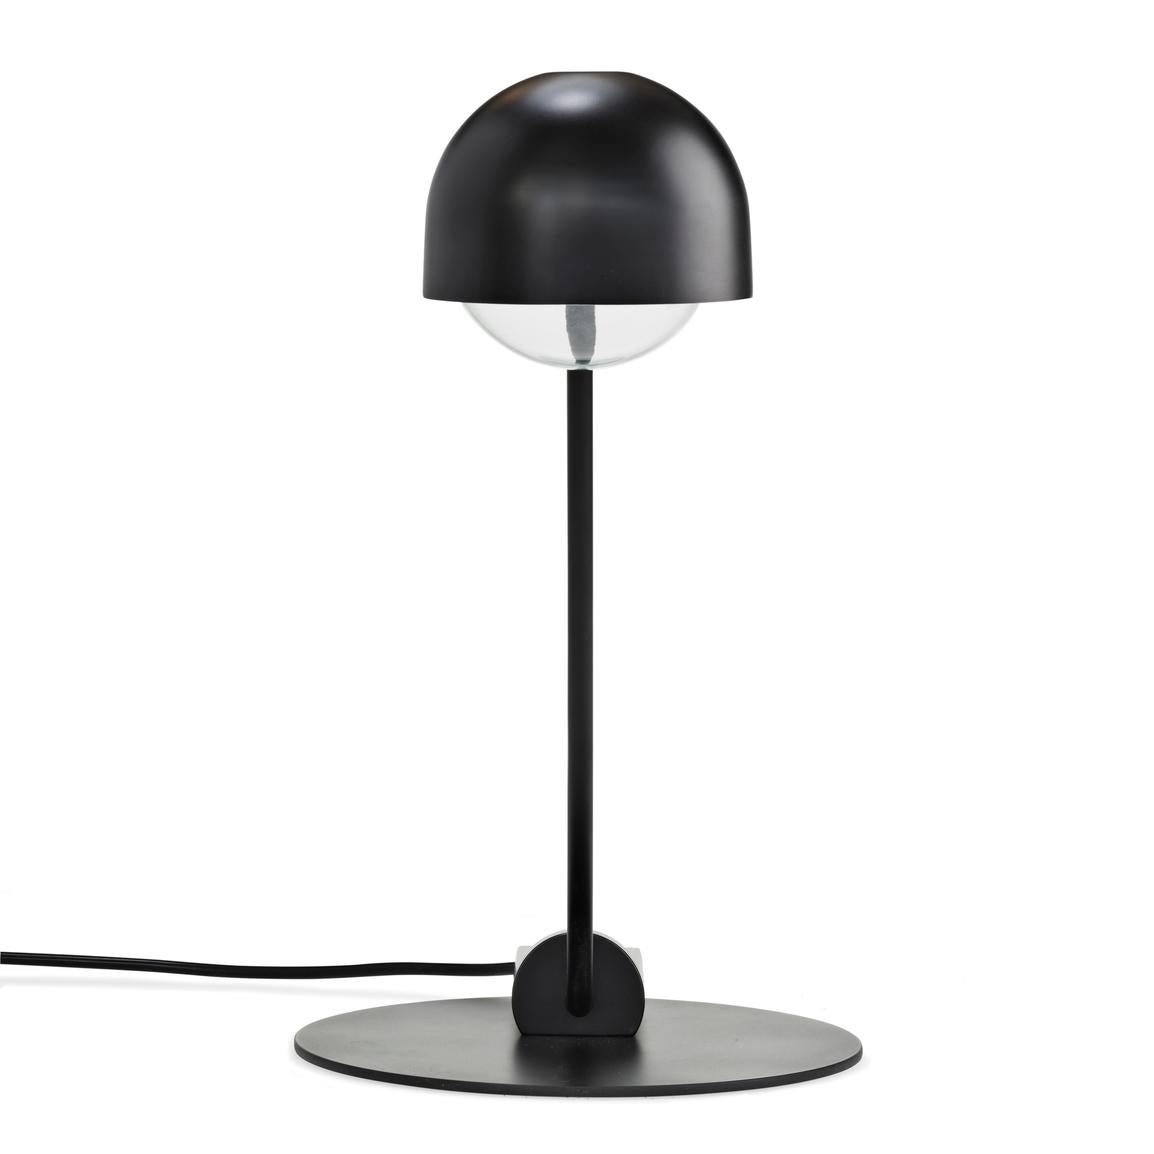 Lampe de table conçue par Joe Colombo en 1965. 

La lampe Domo a été conçue à l'origine par le designer italien Joe Colombo en 1965. À l'époque, il a conçu trois lampes basées sur la même forme de base. Connu pour son design démocratique et